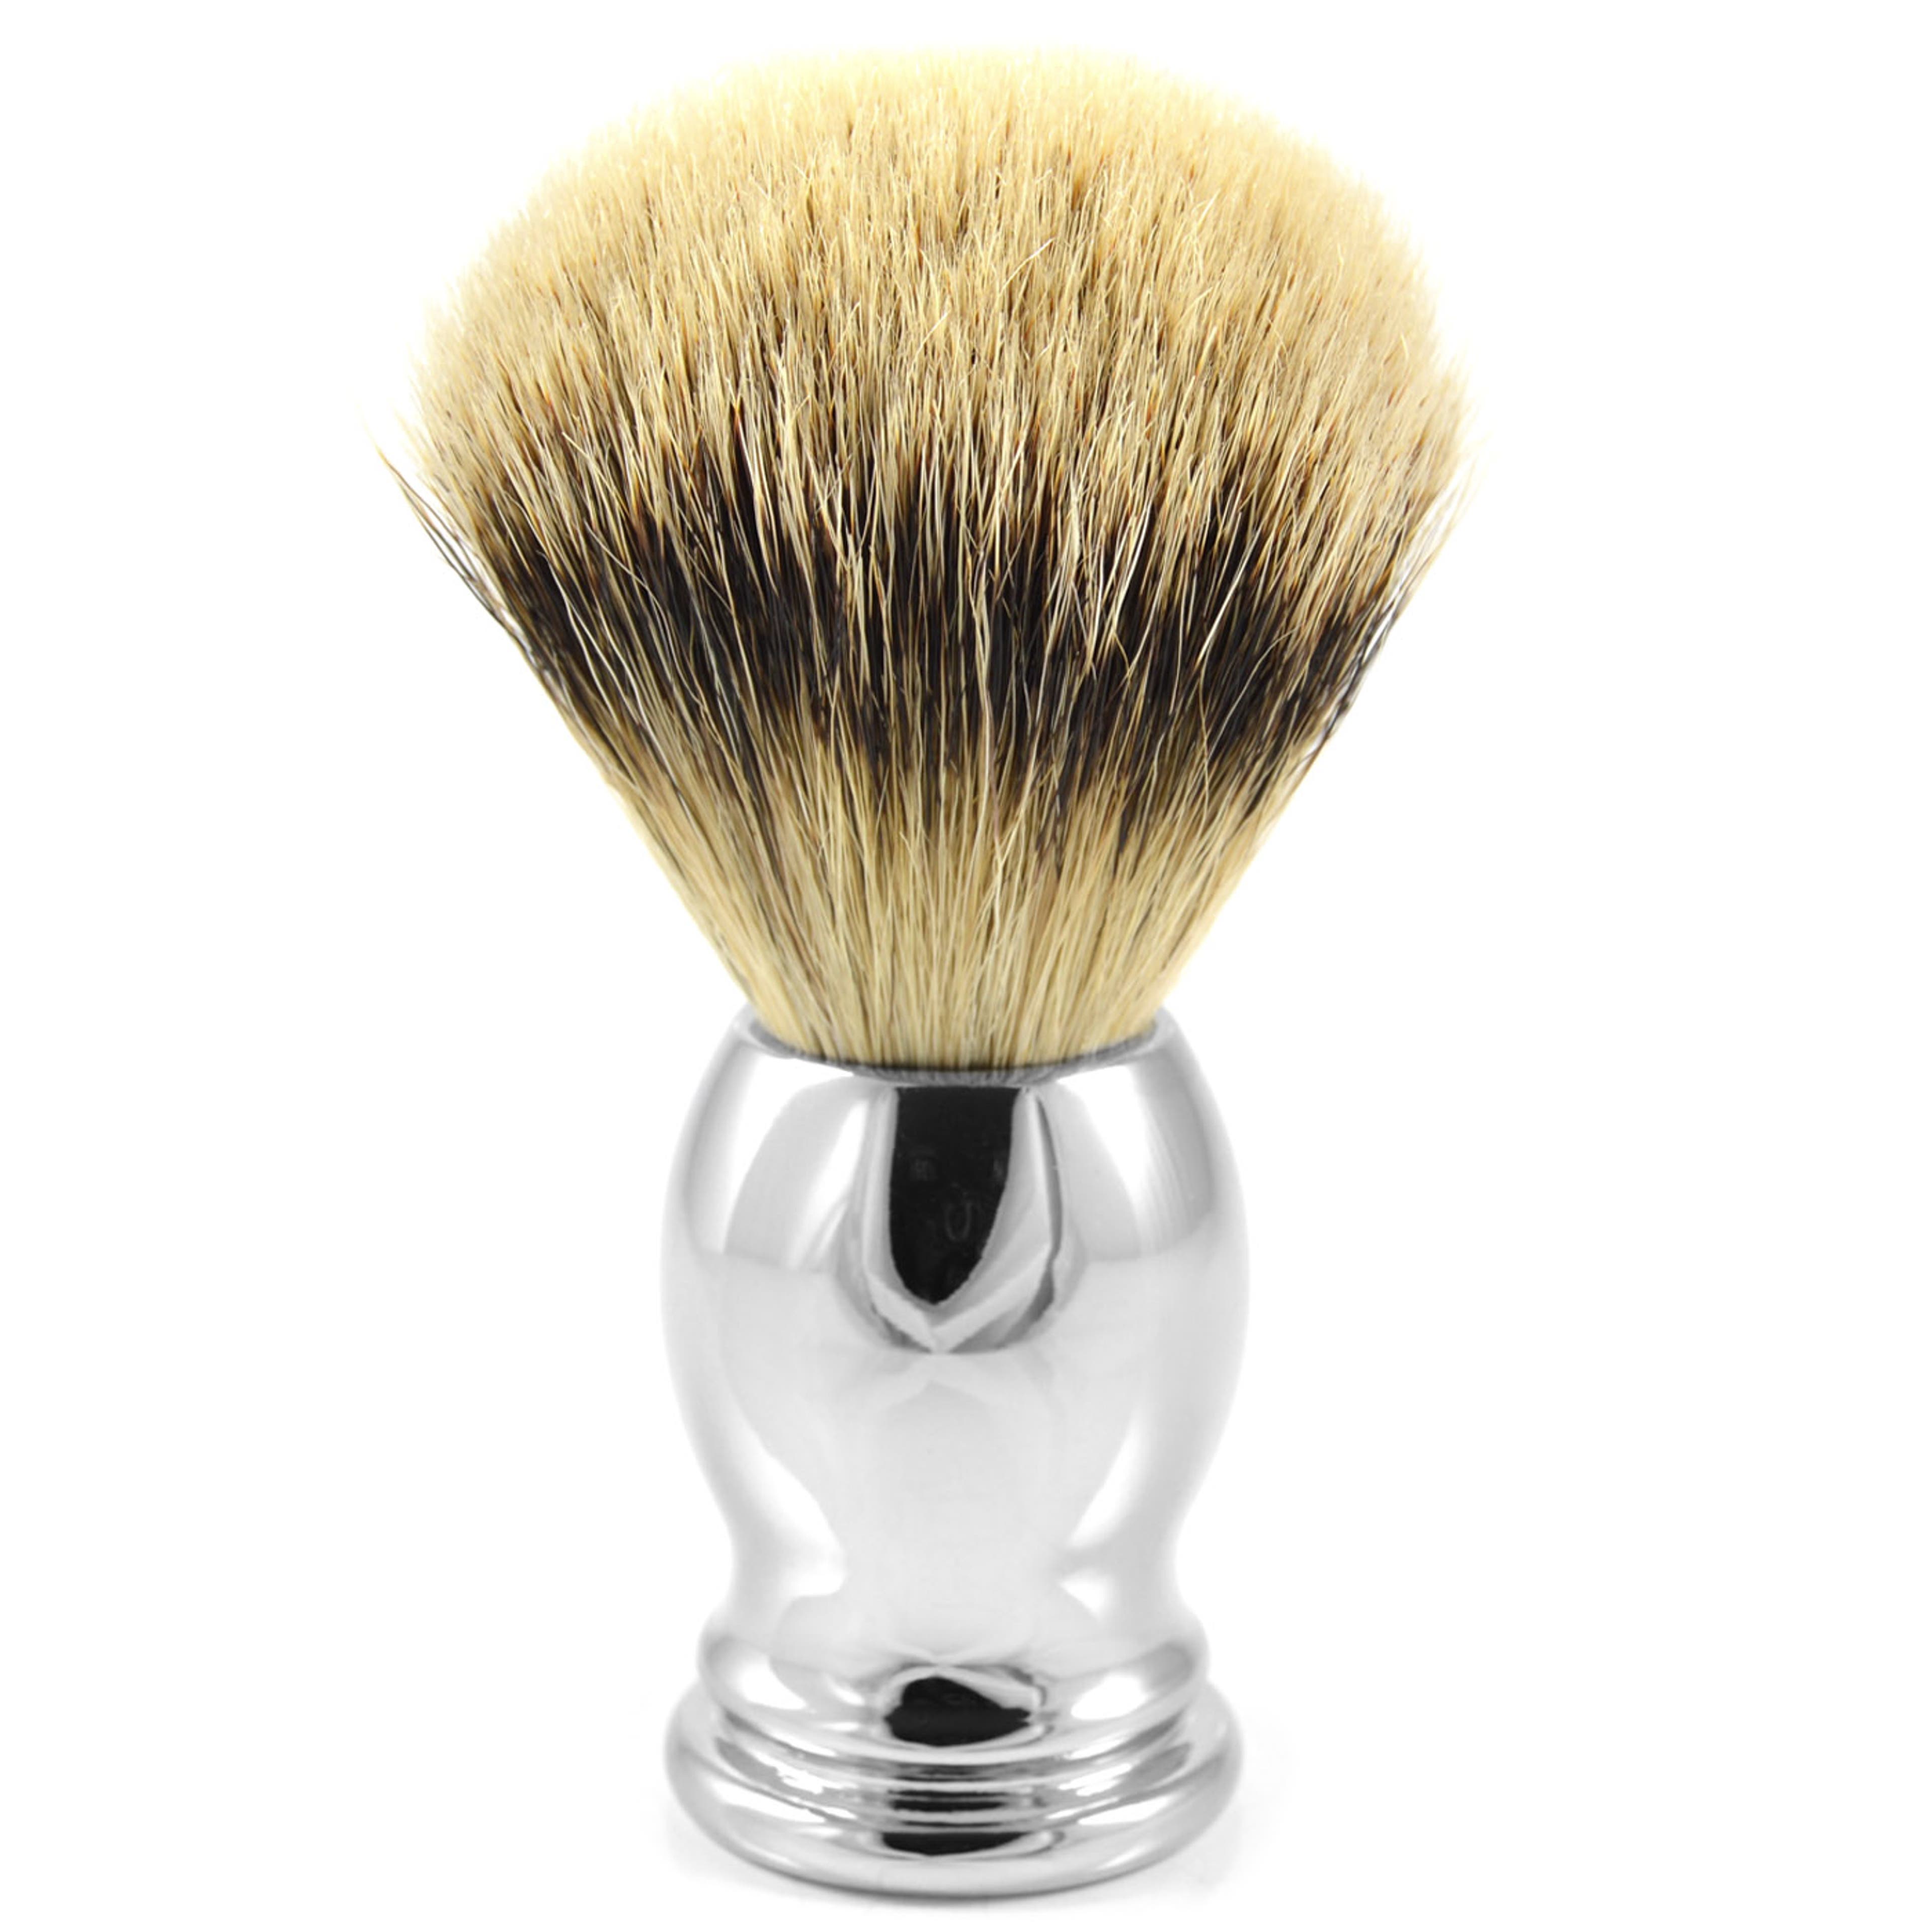 Stainless Steel Oval Silvertip Badger Shaving Brush